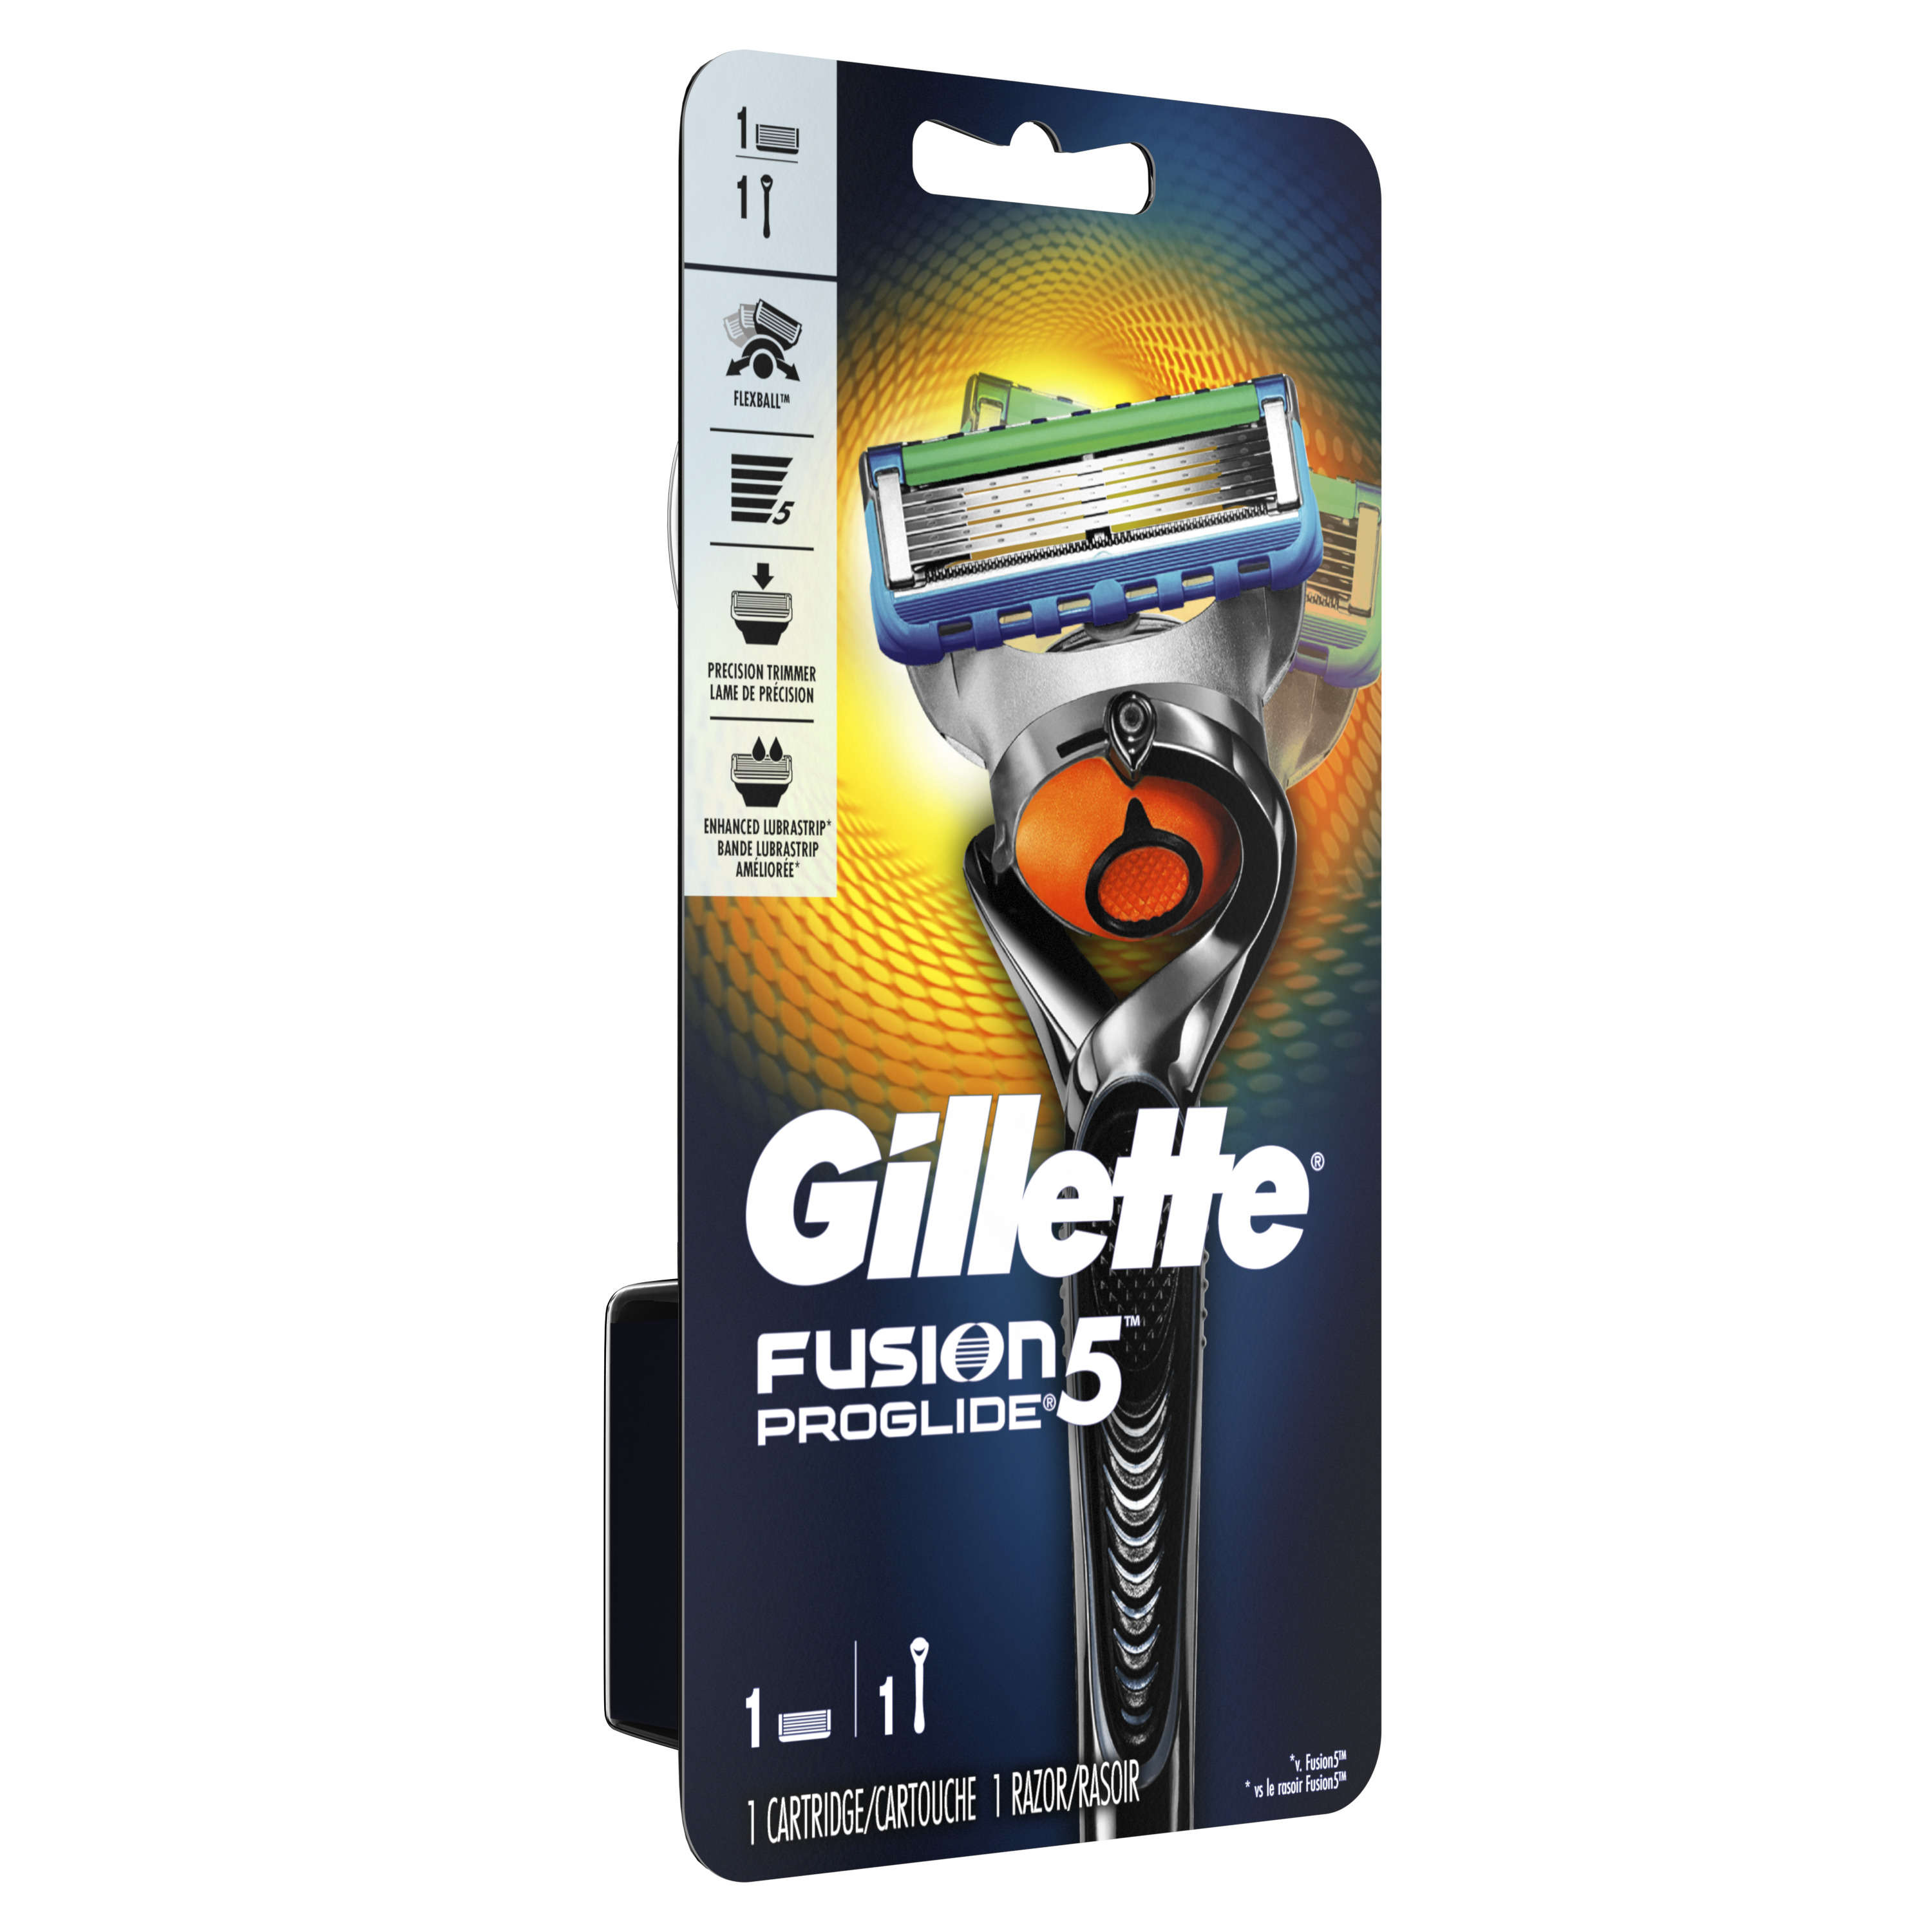 Gillette Fusion5 ProGlide Men's Razor, Handle plus 1 Blade Refill - image 4 of 6